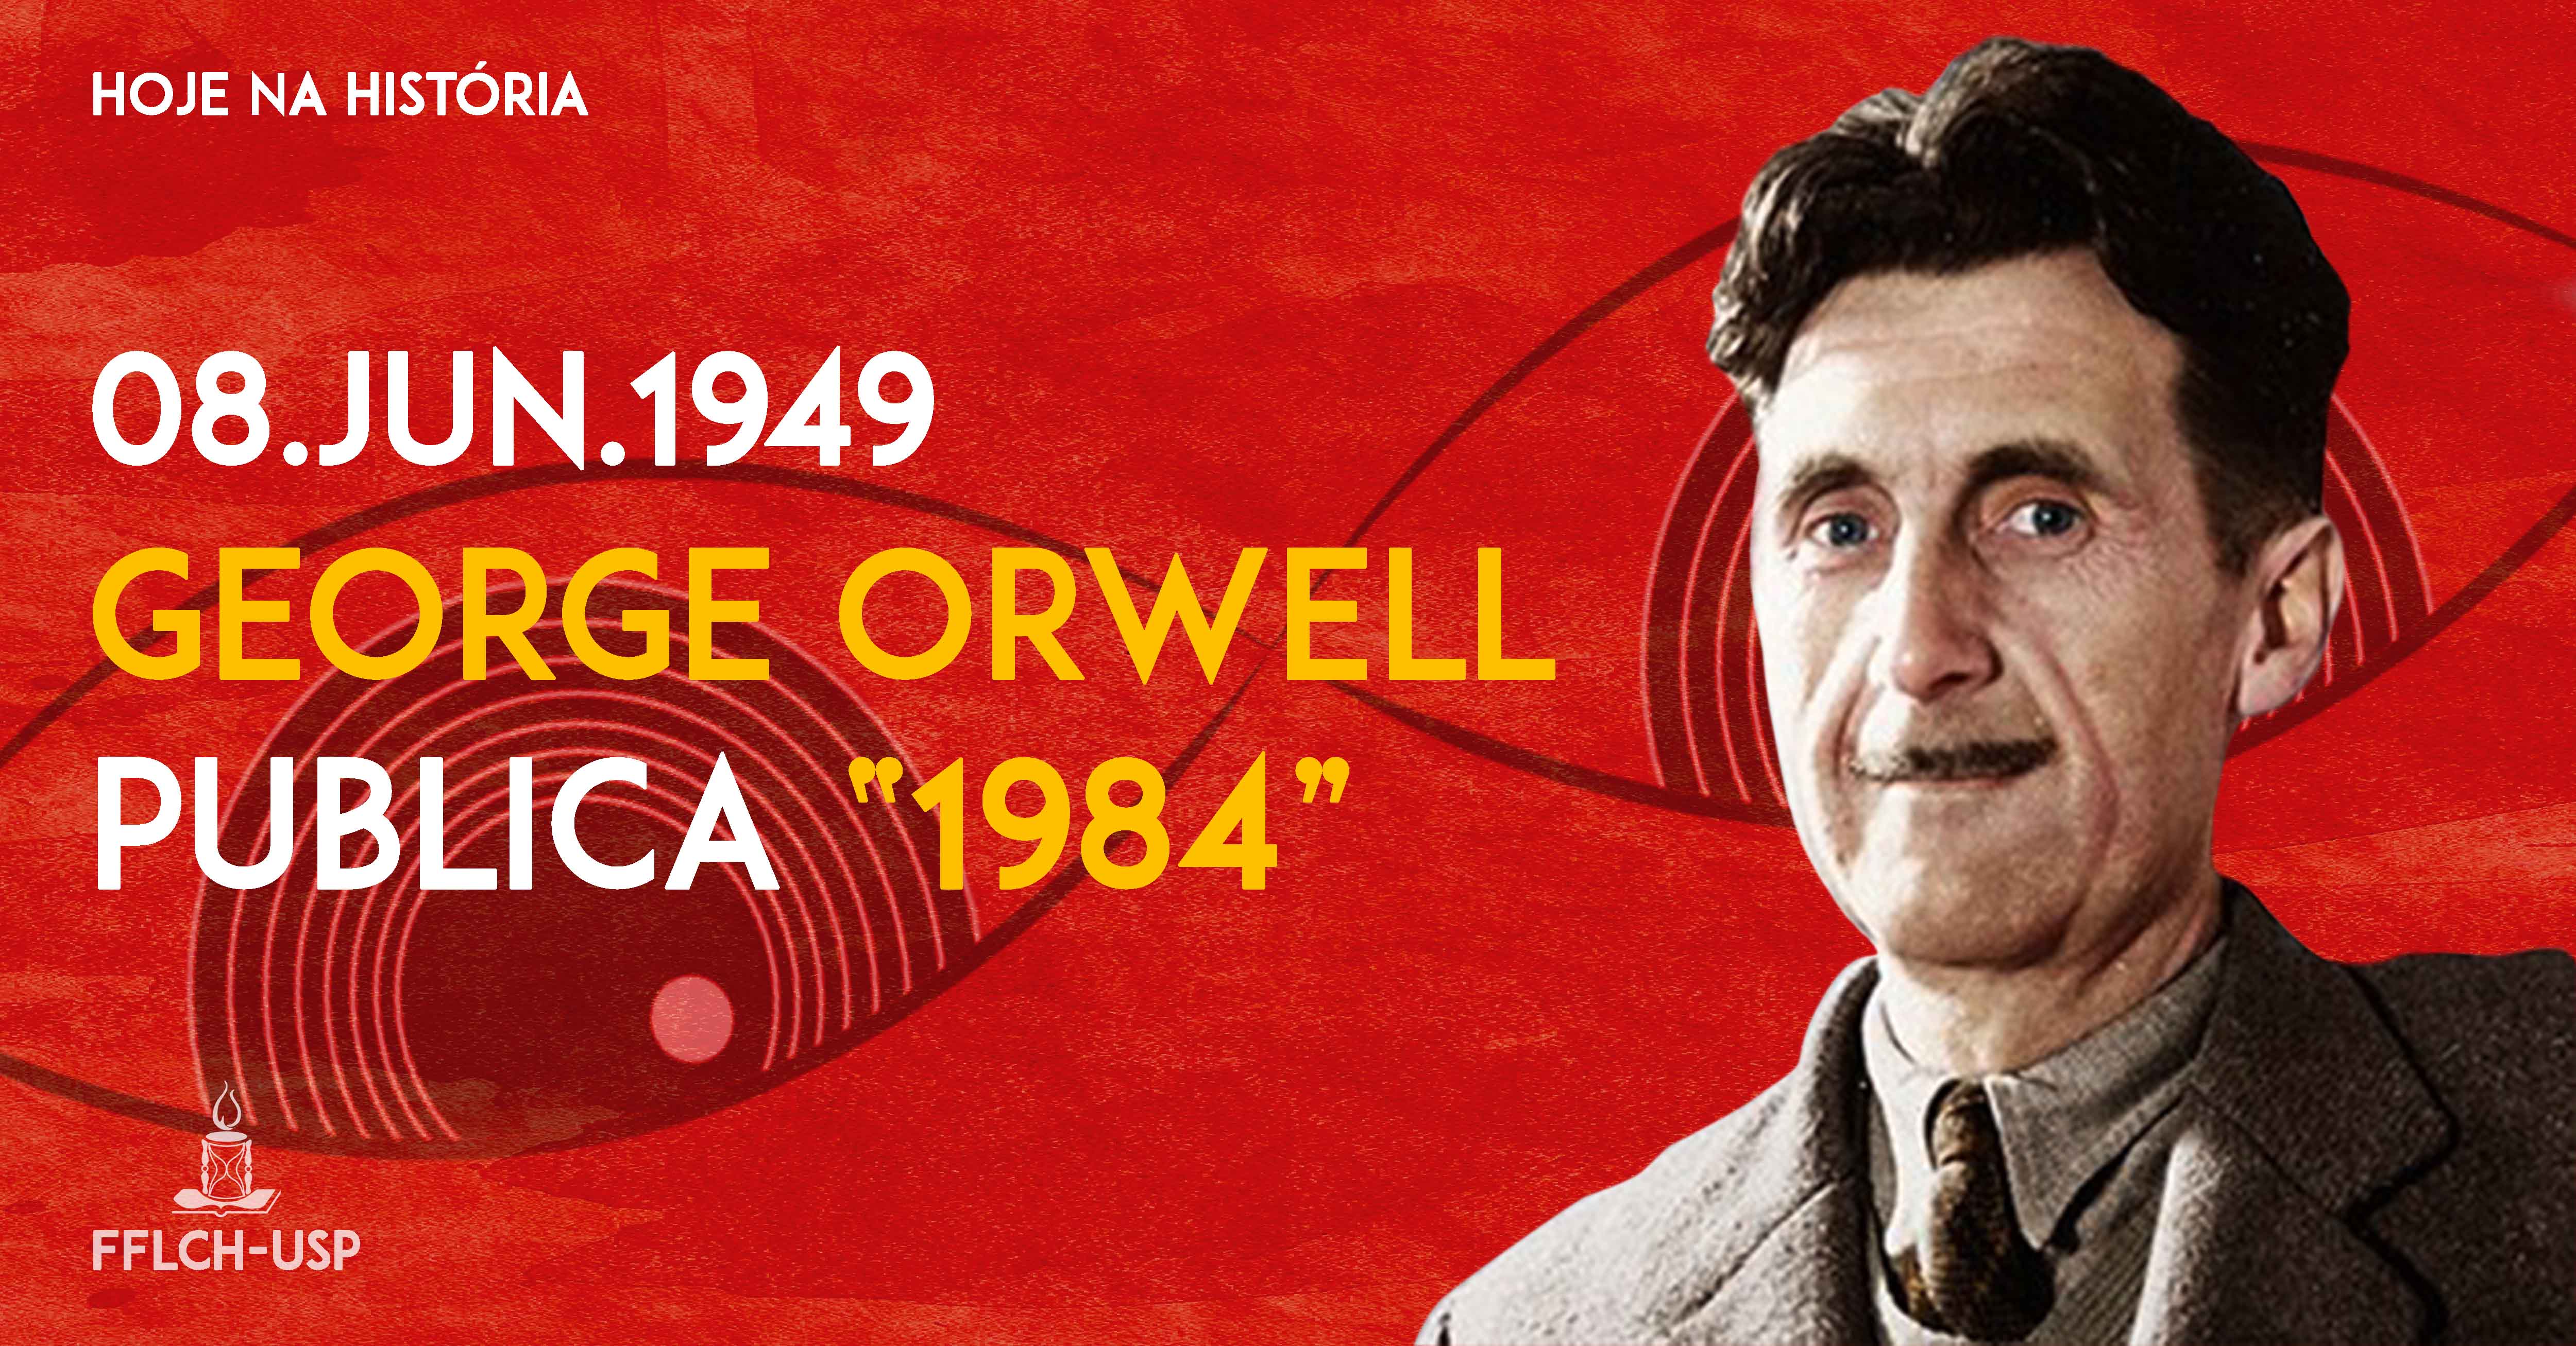 hoje na historia - george orwell 1984